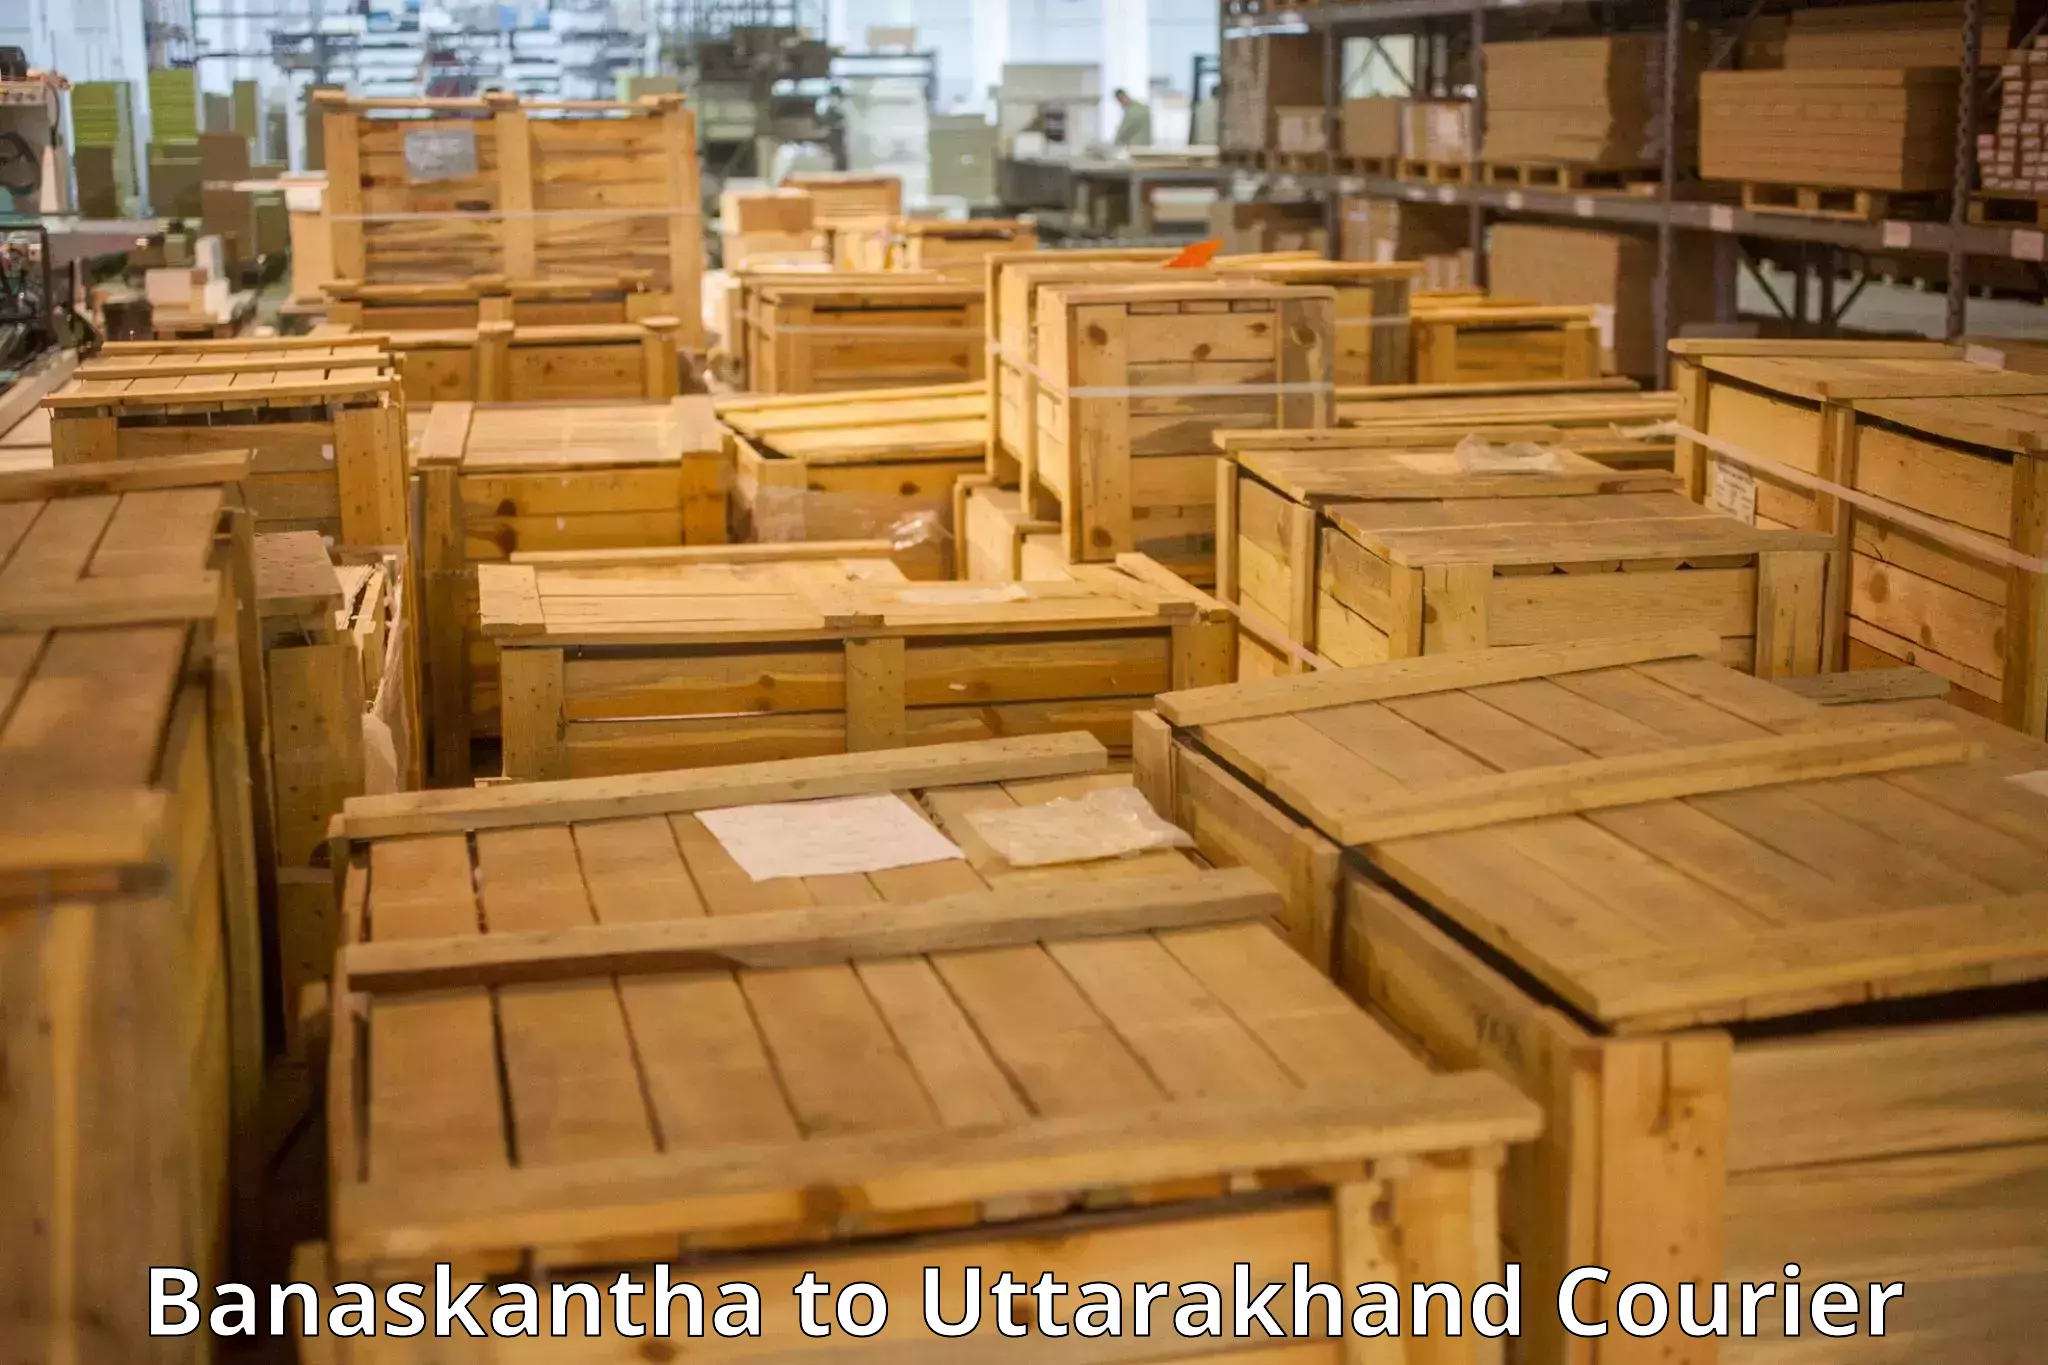 Baggage delivery optimization Banaskantha to Srinagar Pauri Garhwal